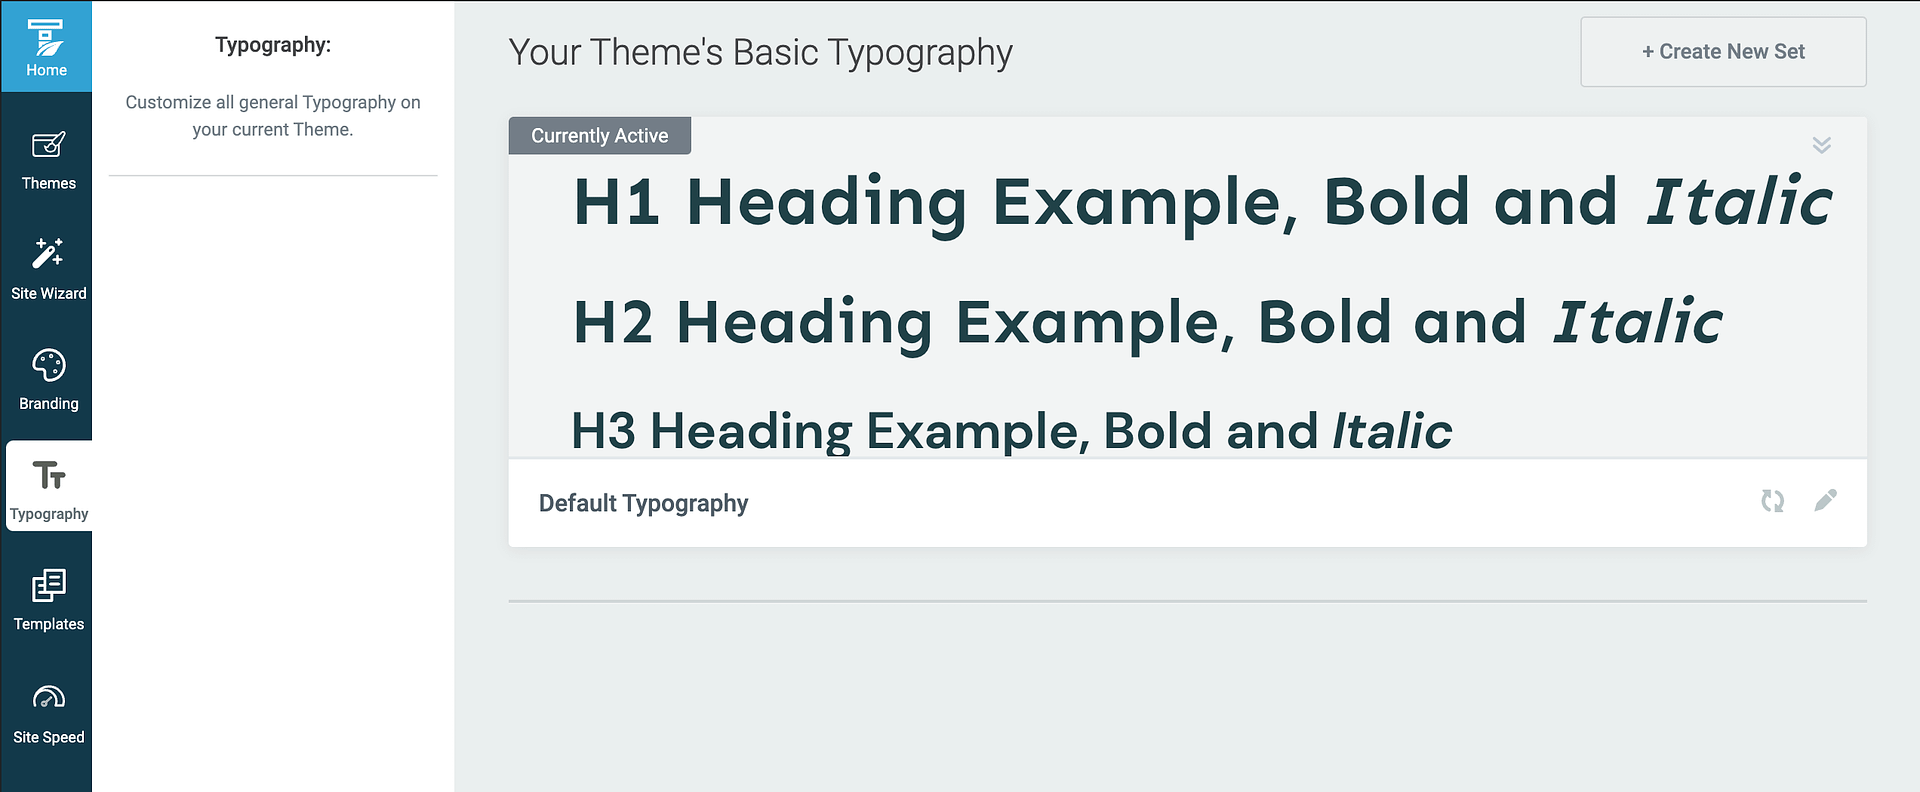 Thrive Theme Builder делает обновление типографики очень простым